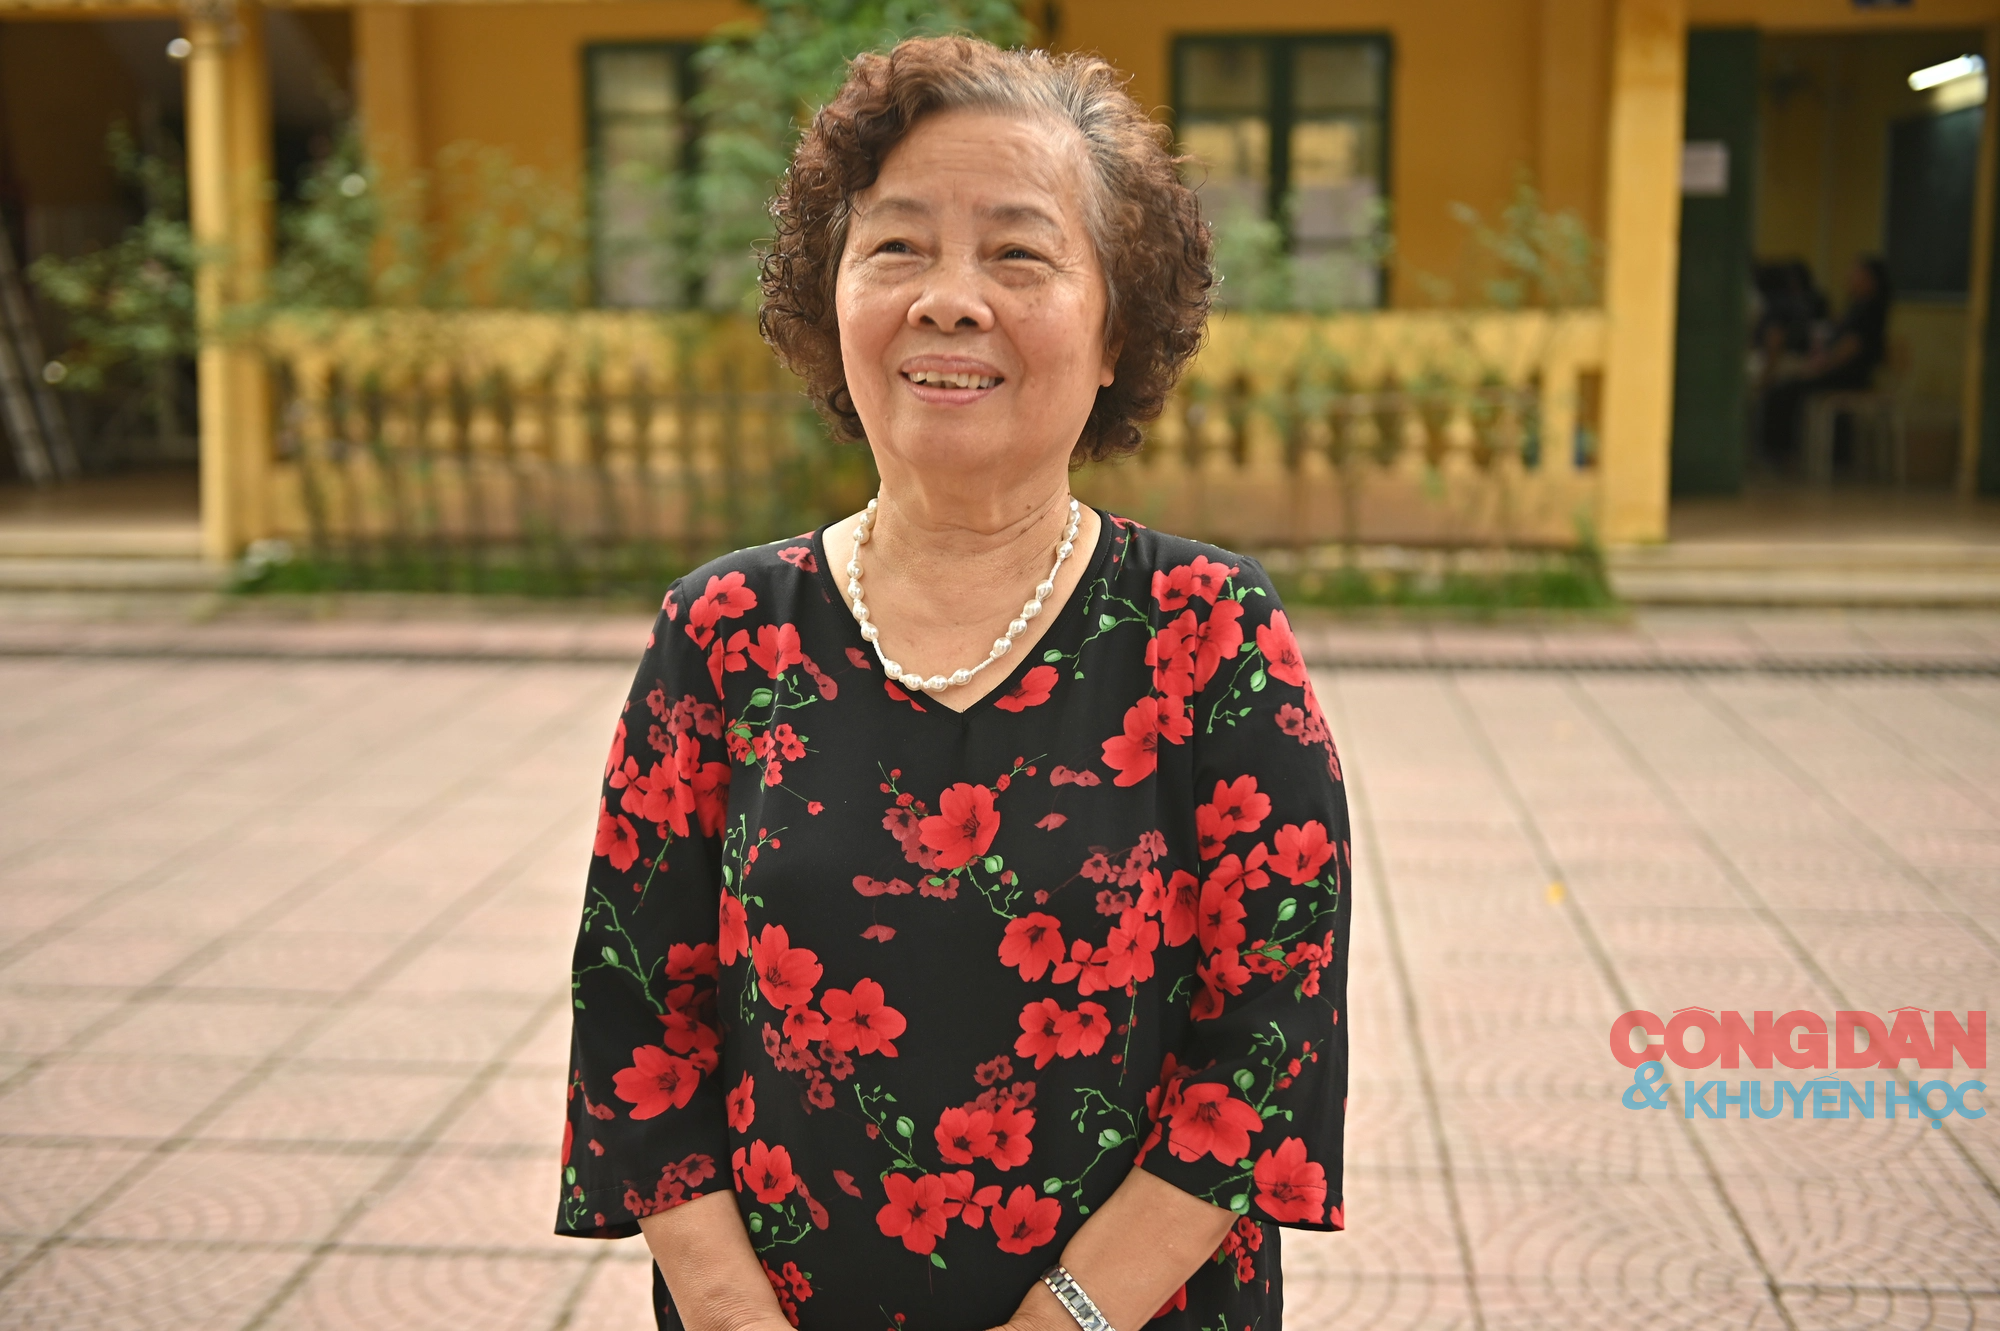 Chăm sóc sức khỏe thầy cô giáo - hình thức tri ân độc đáo của cựu học sinh Trường THPT Nguyễn Thị Minh Khai - Ảnh 2.